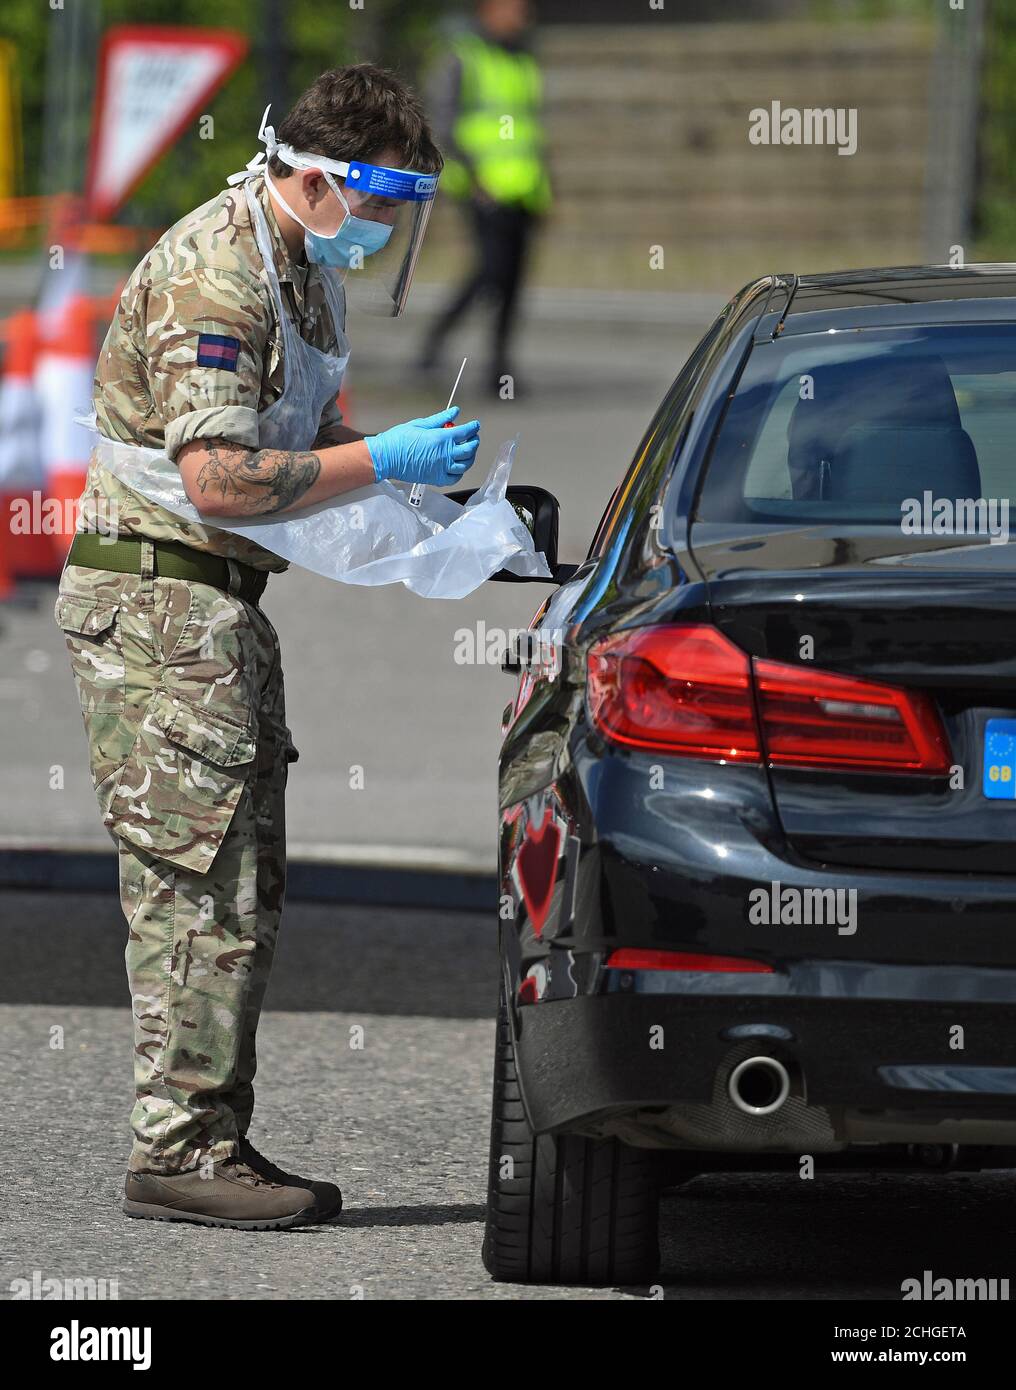 Un soldato tiene un bastoncino presso una stazione di test drive-thrus nel parcheggio del Chessington World of Adventures Resort nel sud-ovest di Londra. Foto Stock